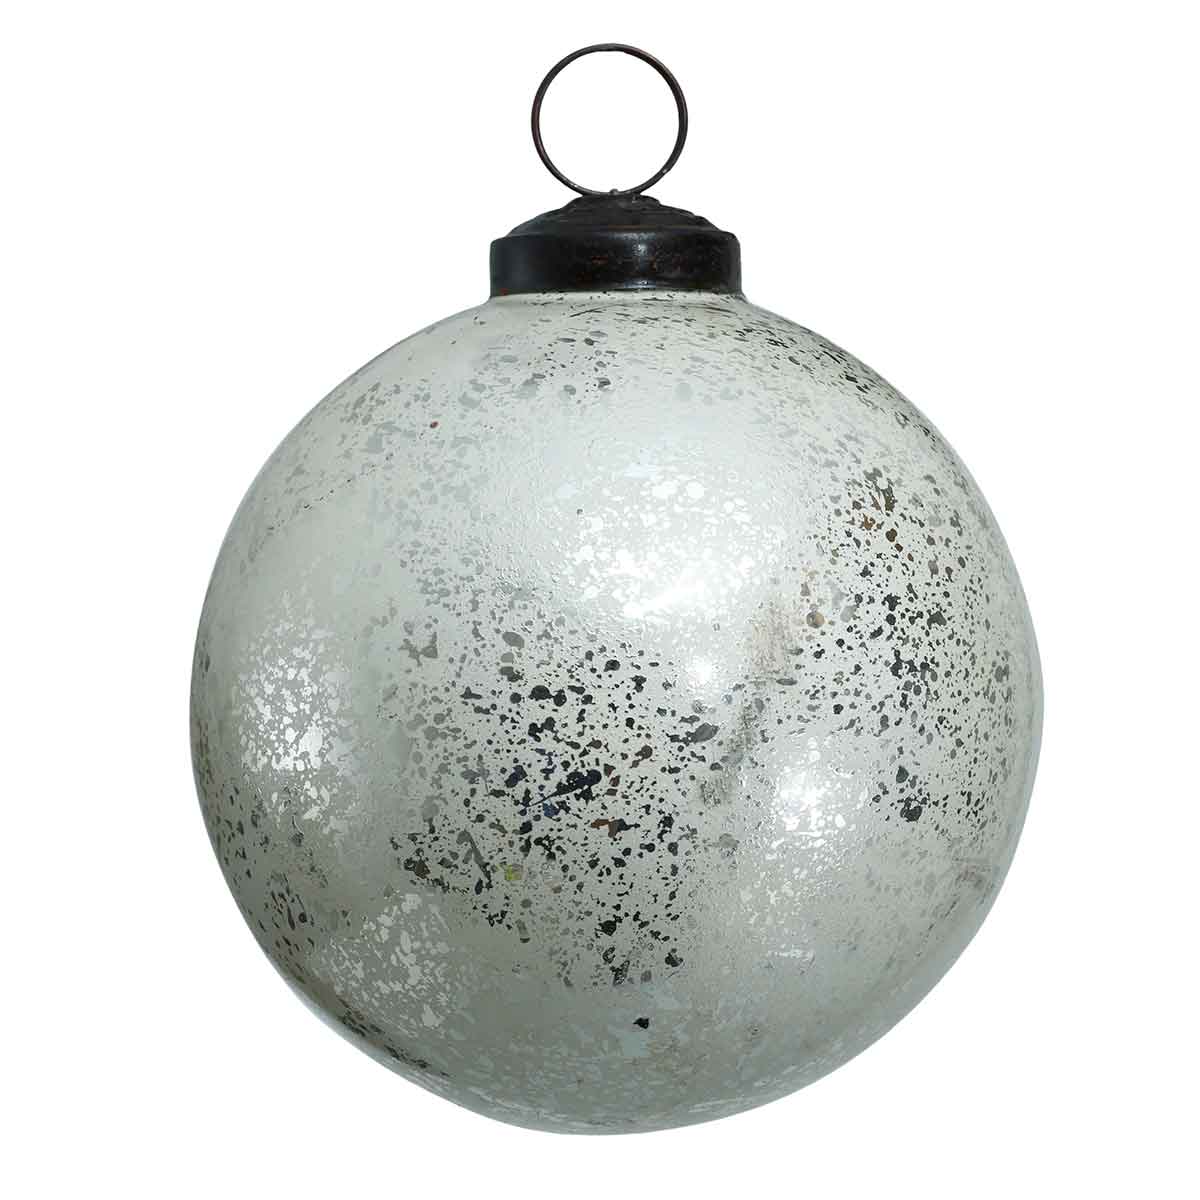 Ptmd décoration de noël snowy - 10x10x10 cm - verre - argent